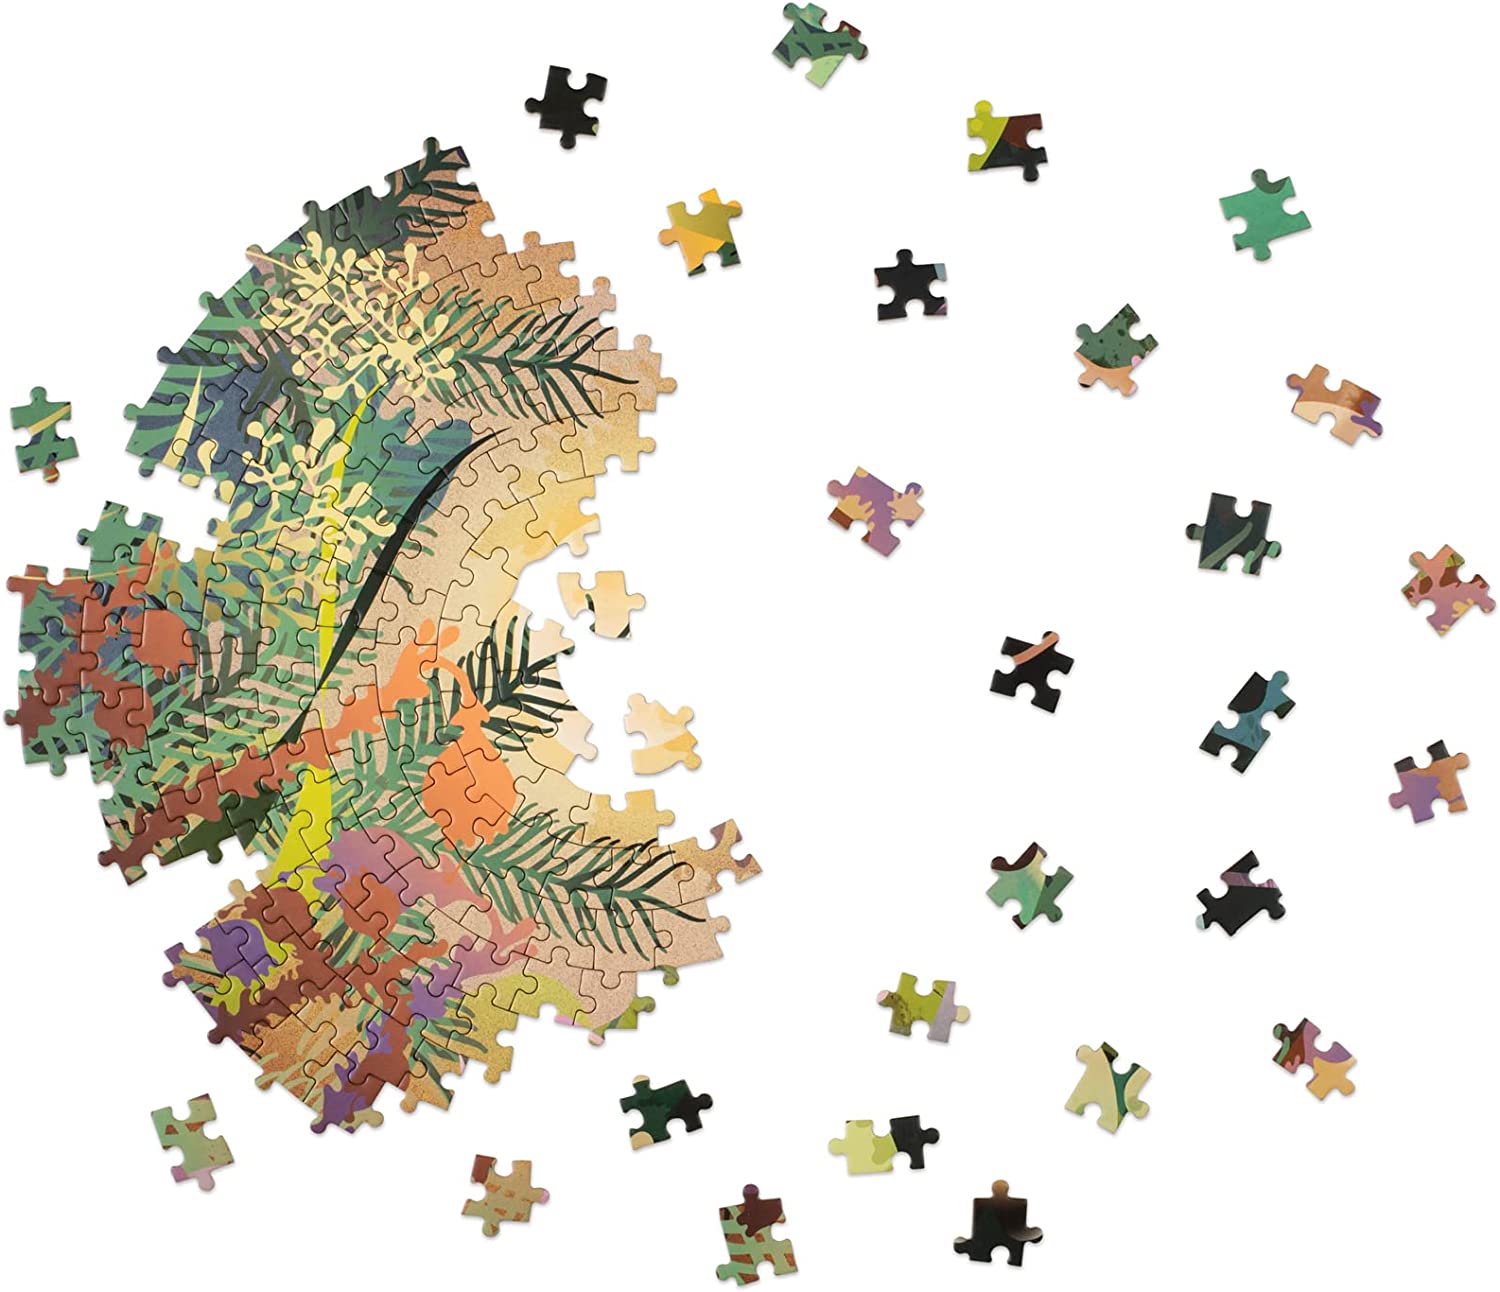 Ulmer Puzzleschmiede - Puzzle Winter-Genuss - Klassisches 1000 Teile Puzzle  für die kalte Jahreszeit - Motiv aus der Weihnachtsbäckerei fürs Puzzeln